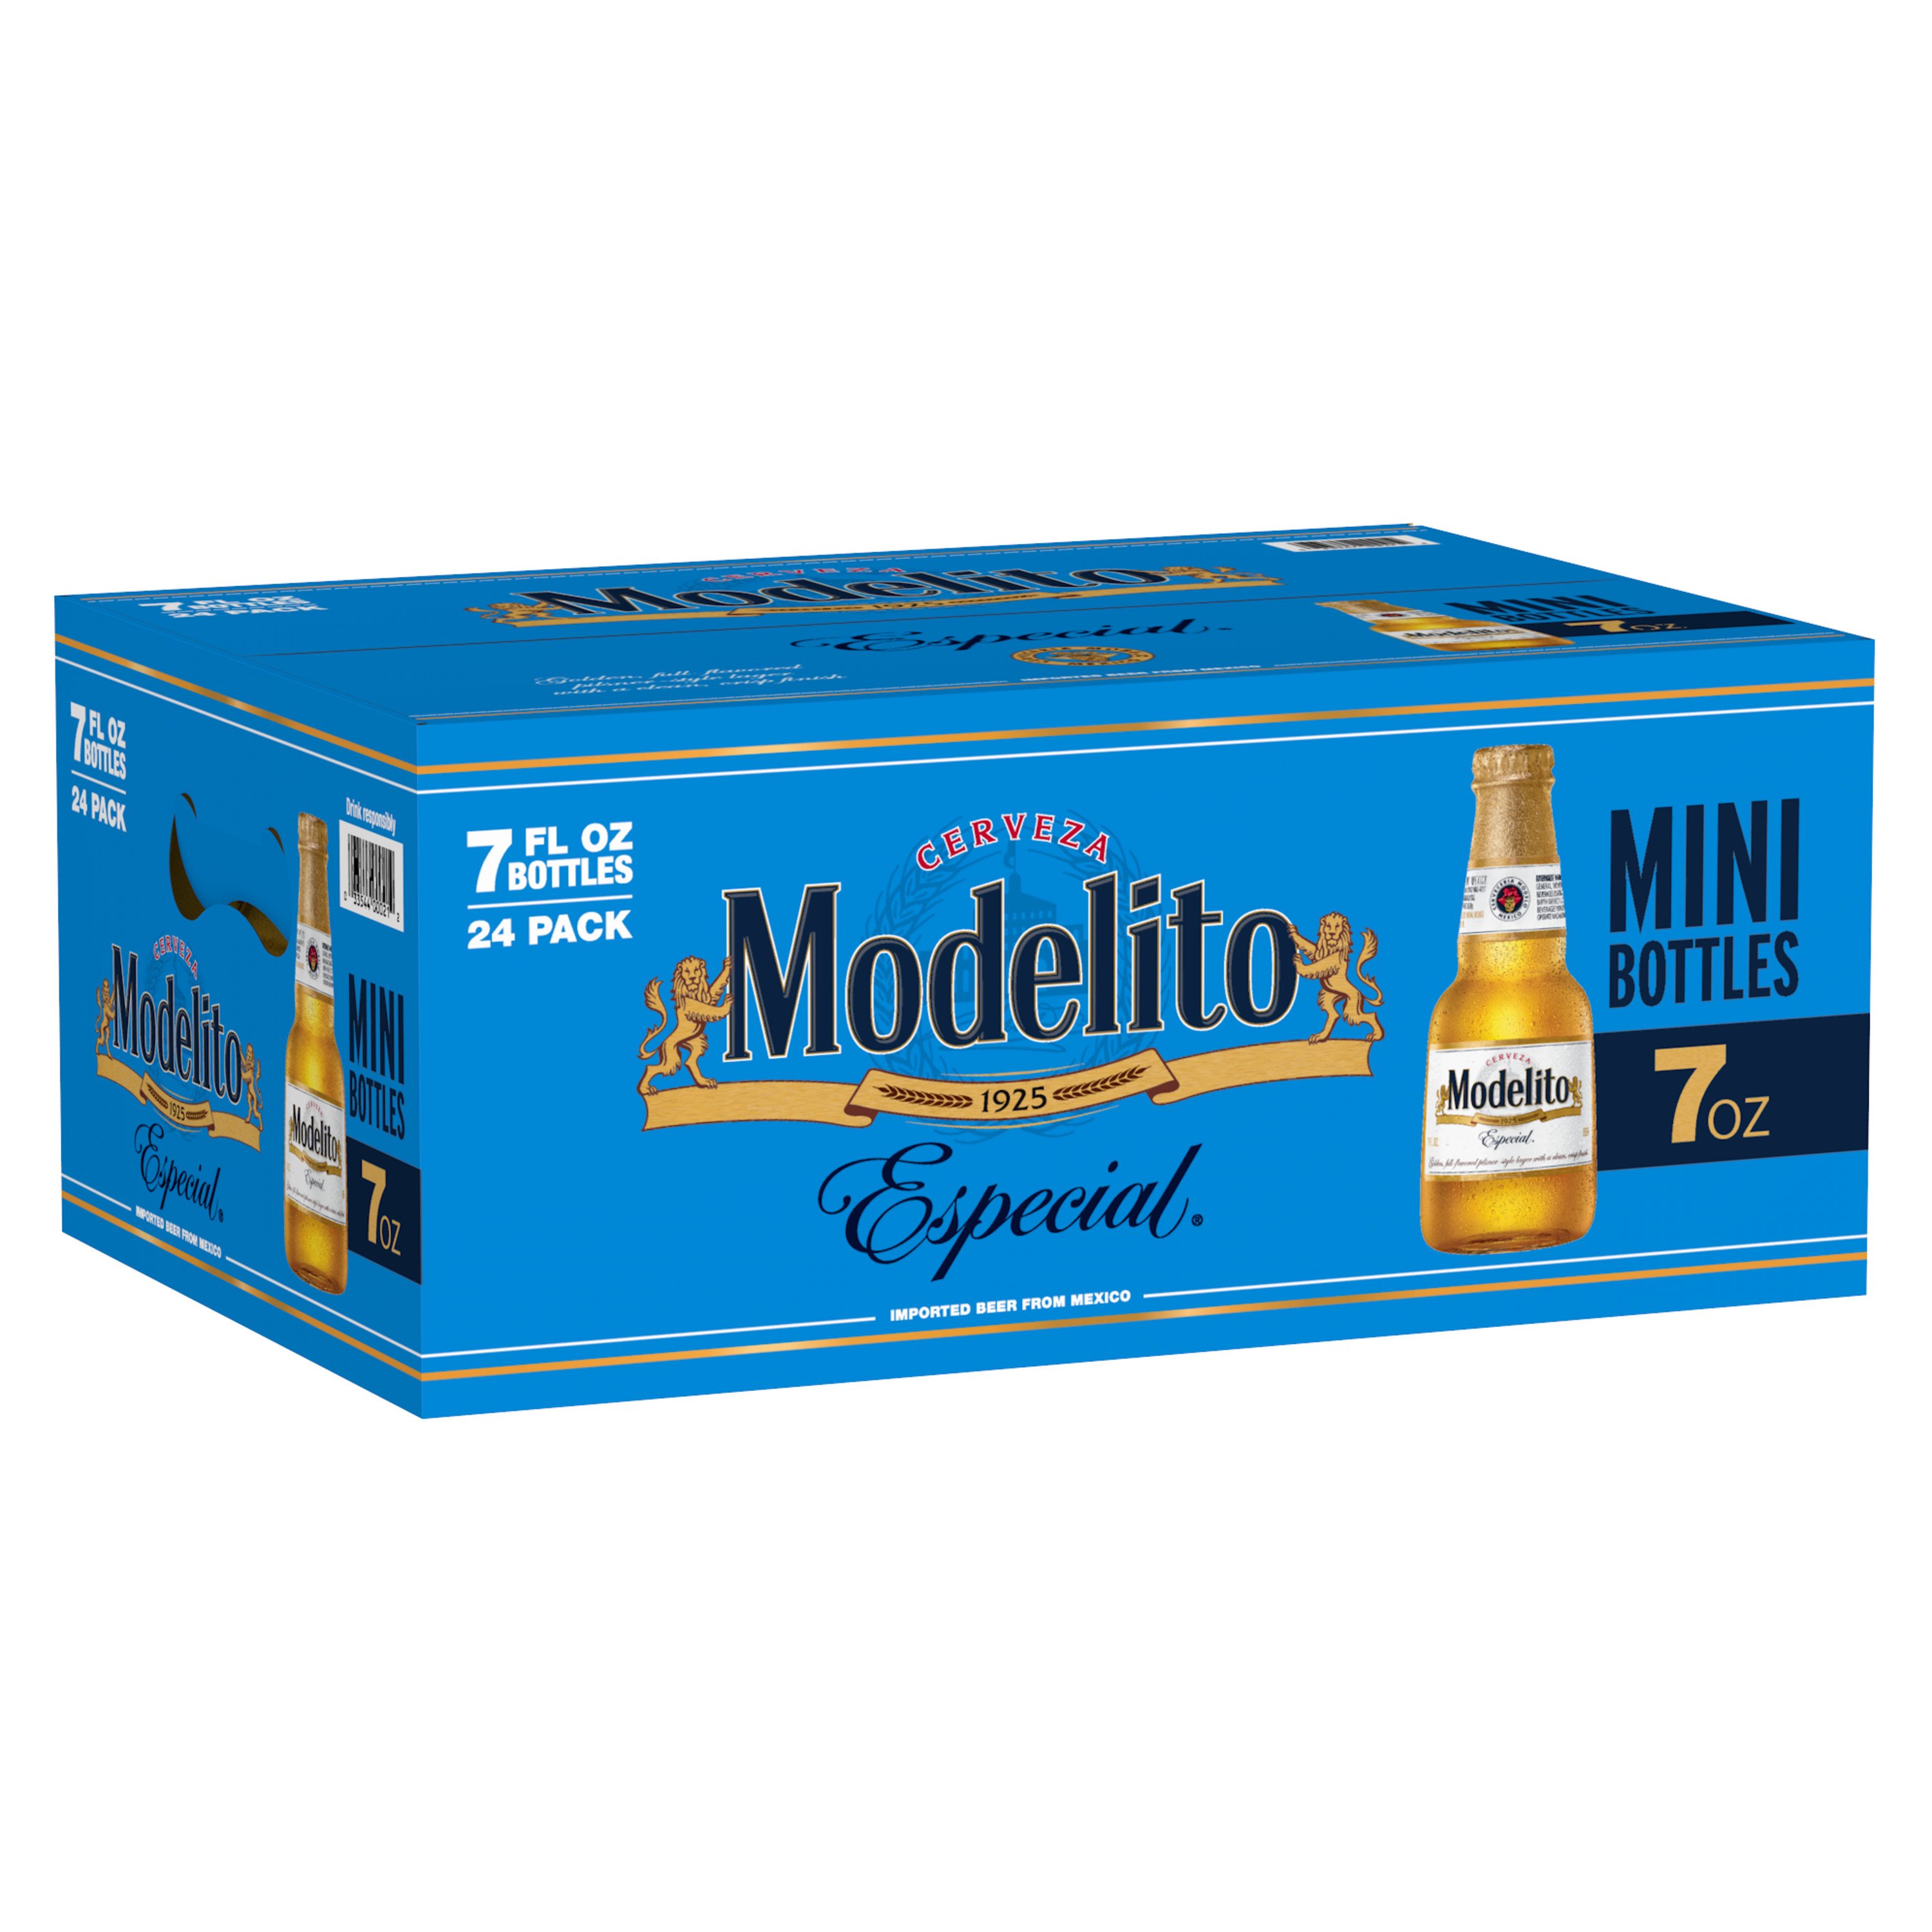 Modelo Especial Mexican Lager 24 x 355ml Case